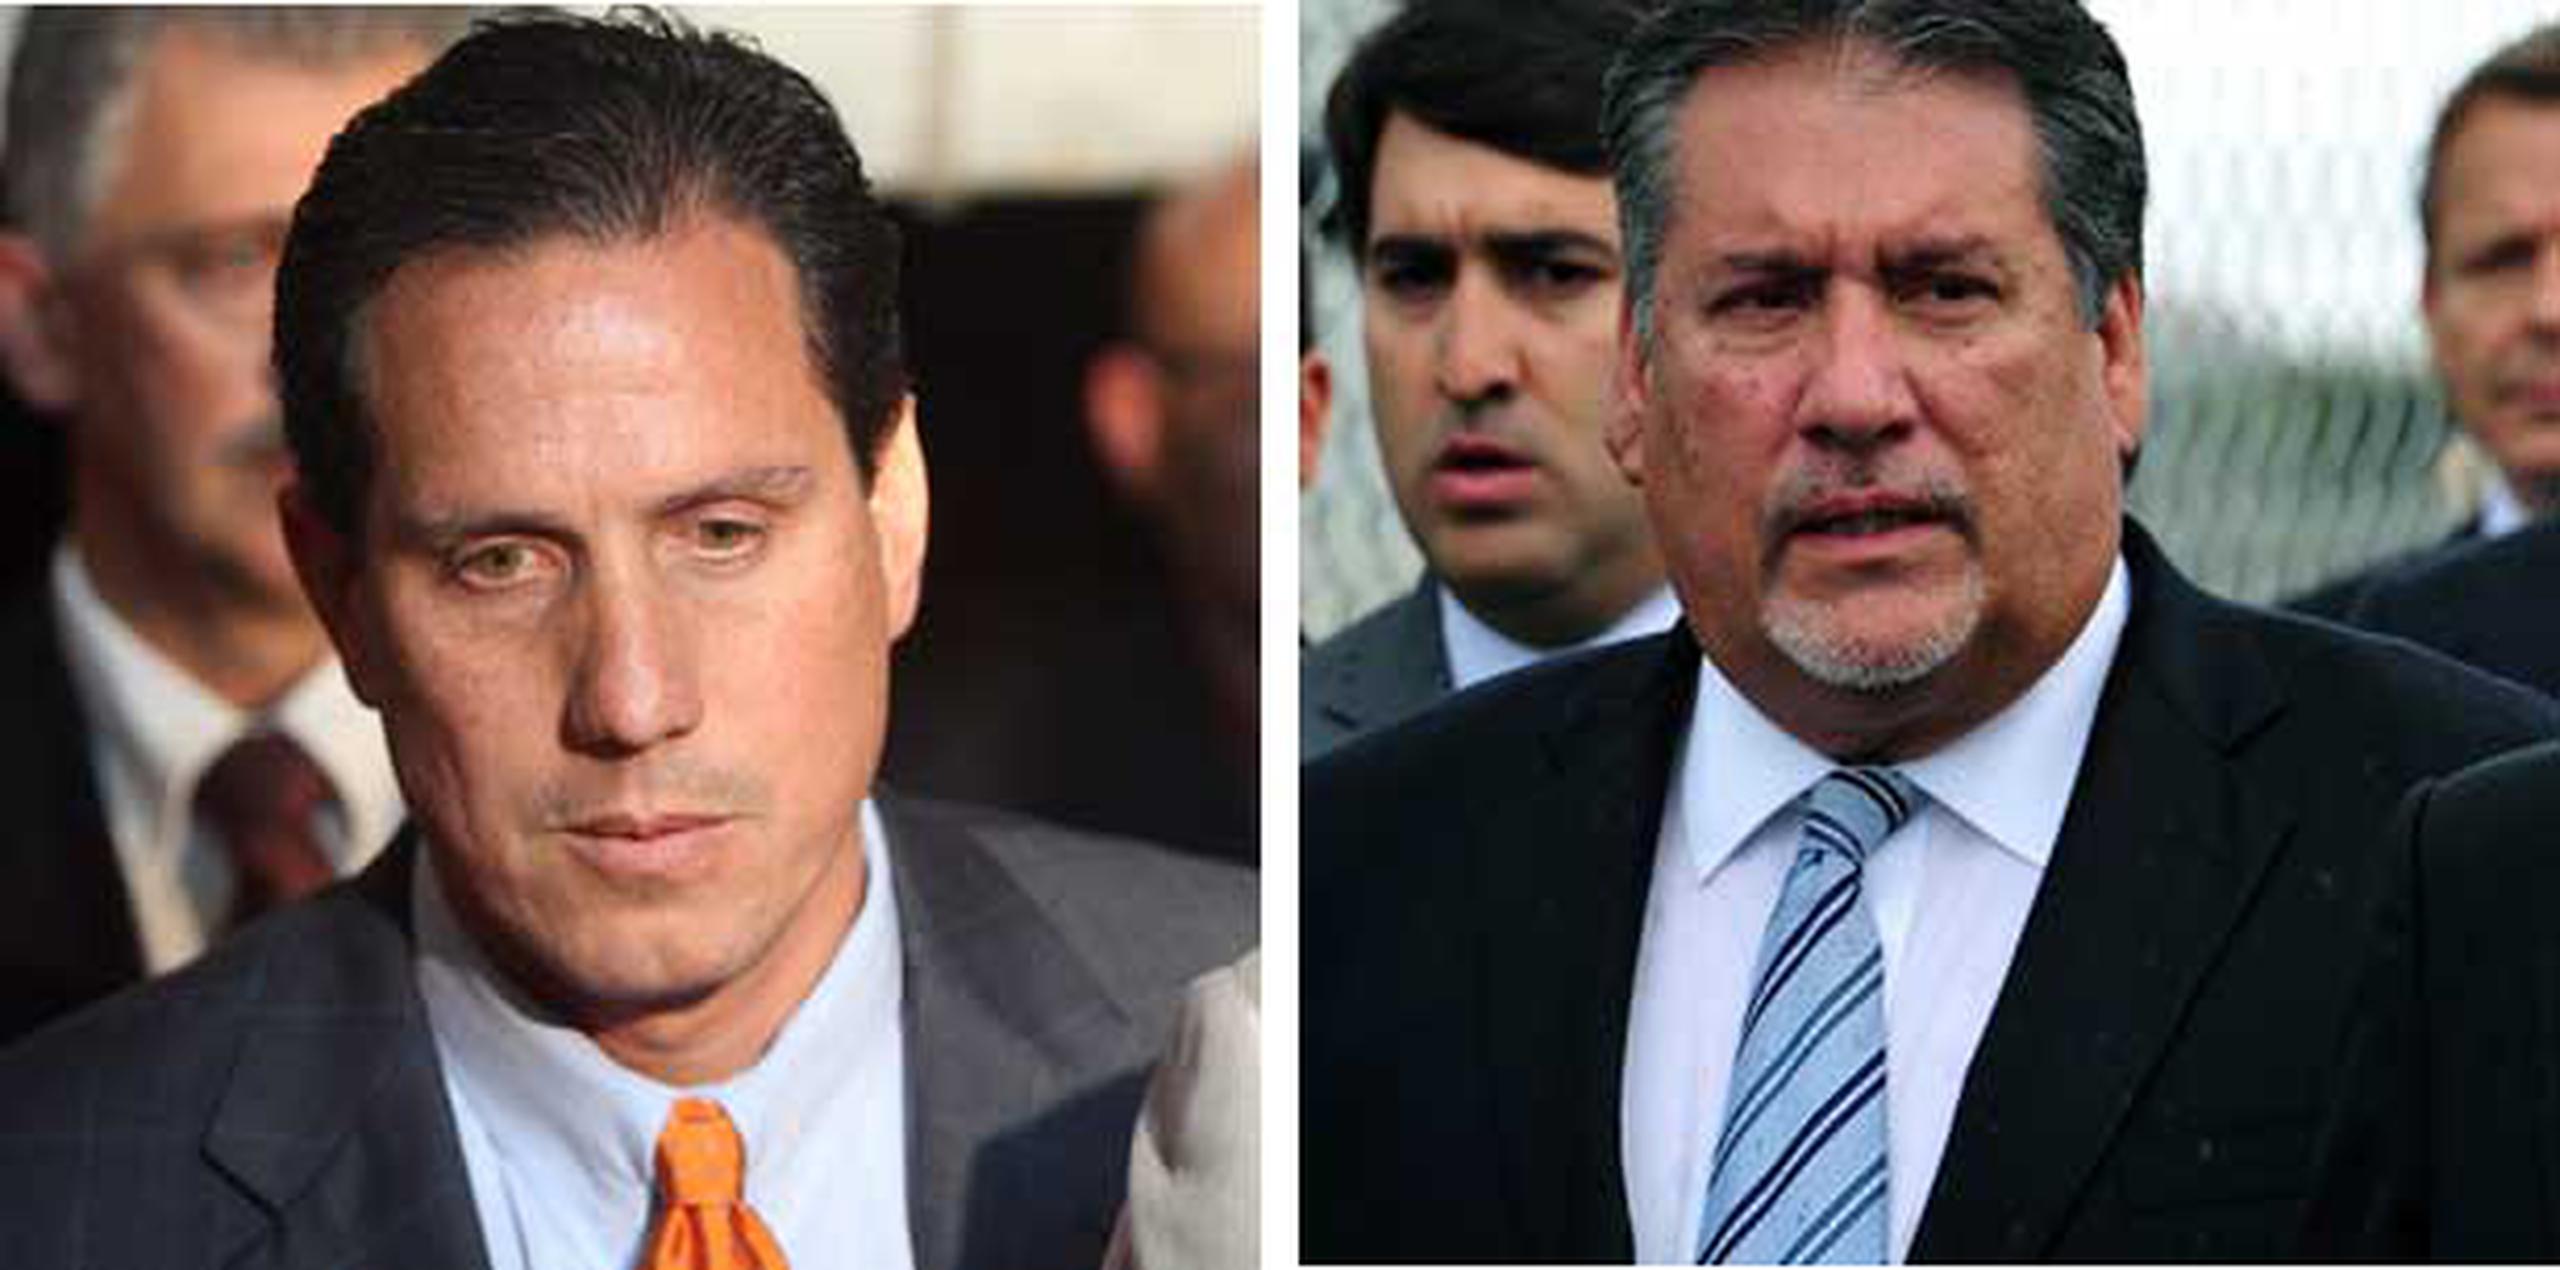 Héctor Martínez Maldonado y Juan Bravo Fernández fueron encontrados culpables en marzo de 2011 por cargos de conspiración y soborno relacionados a un viaje a Las Vegas para ver una pelea de boxeo. Archivo)